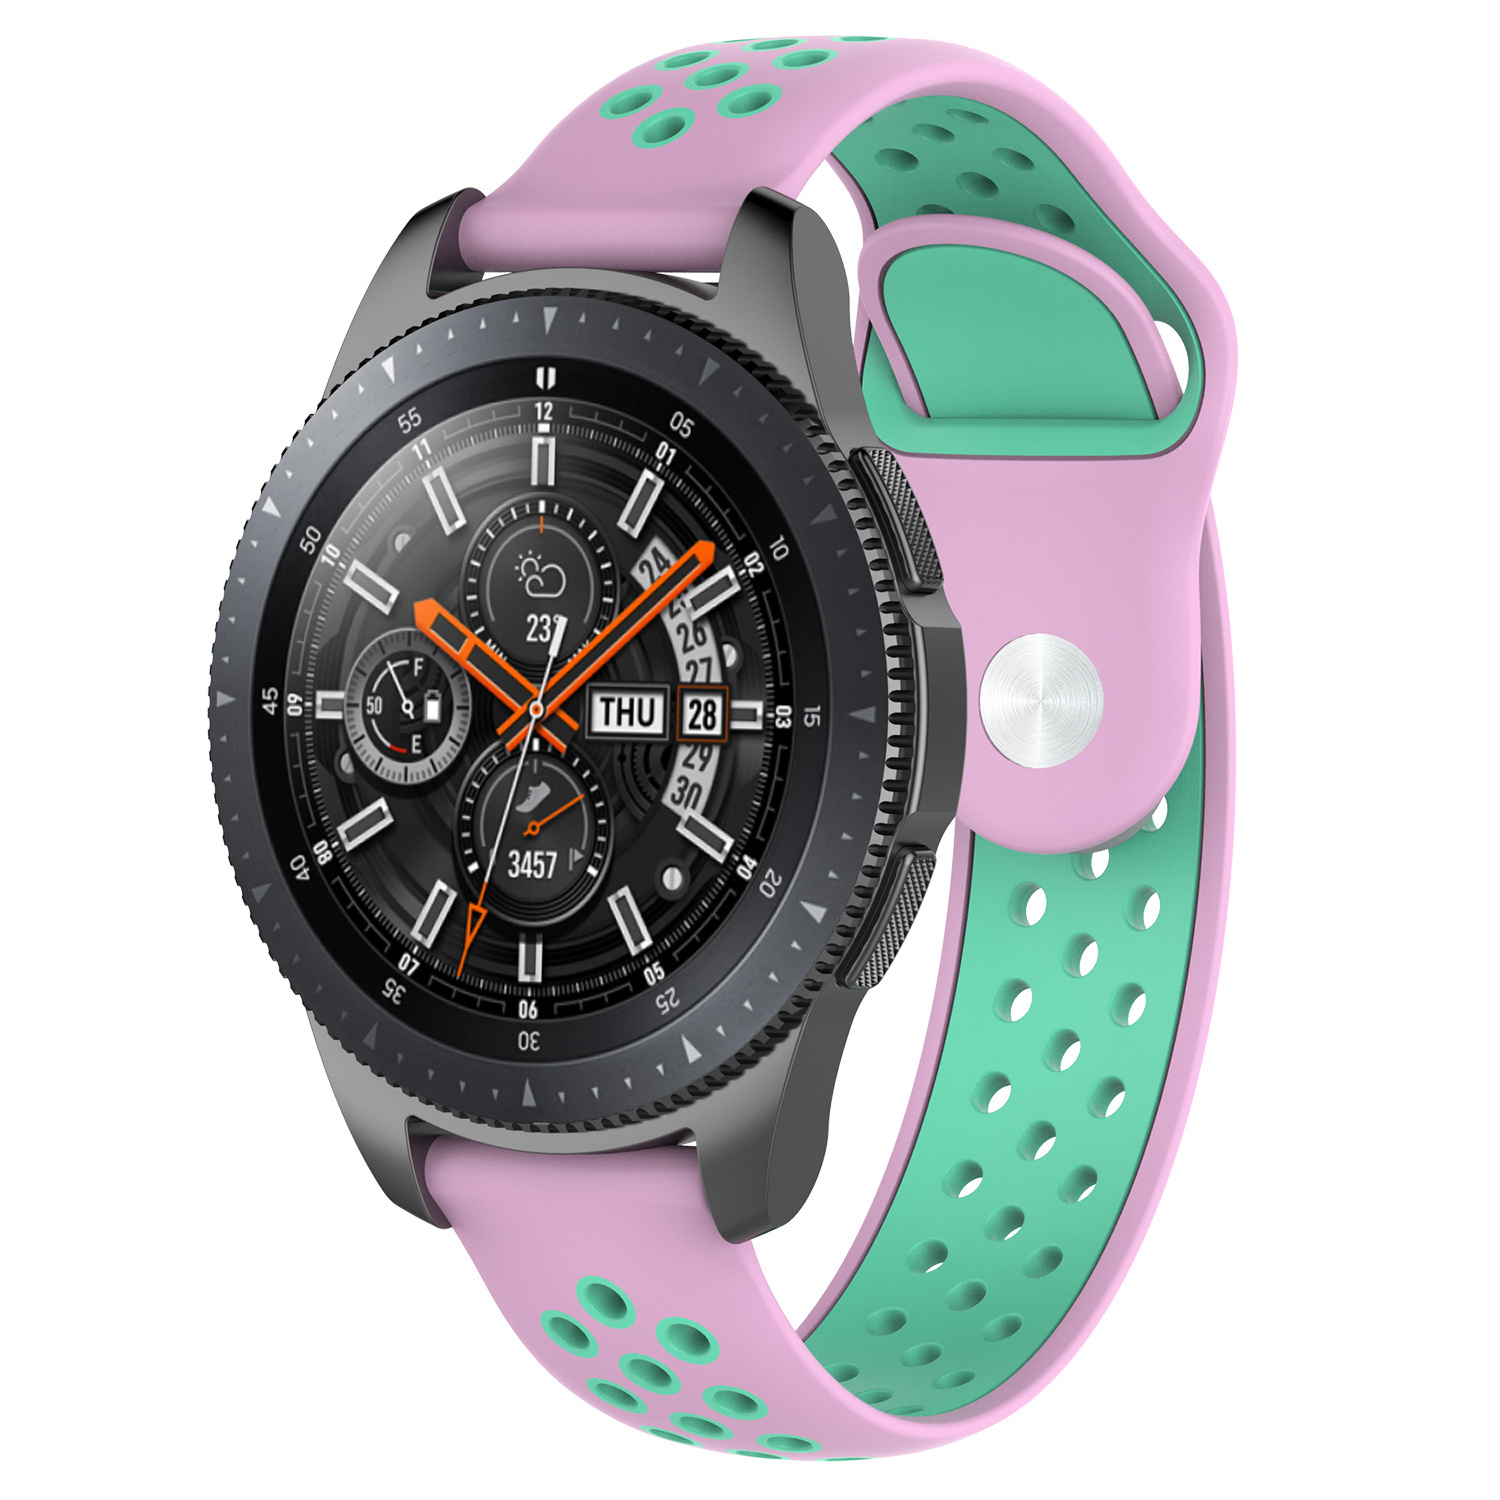 Samsung Galaxy Watch dupla sport szalag - rózsaszín teal